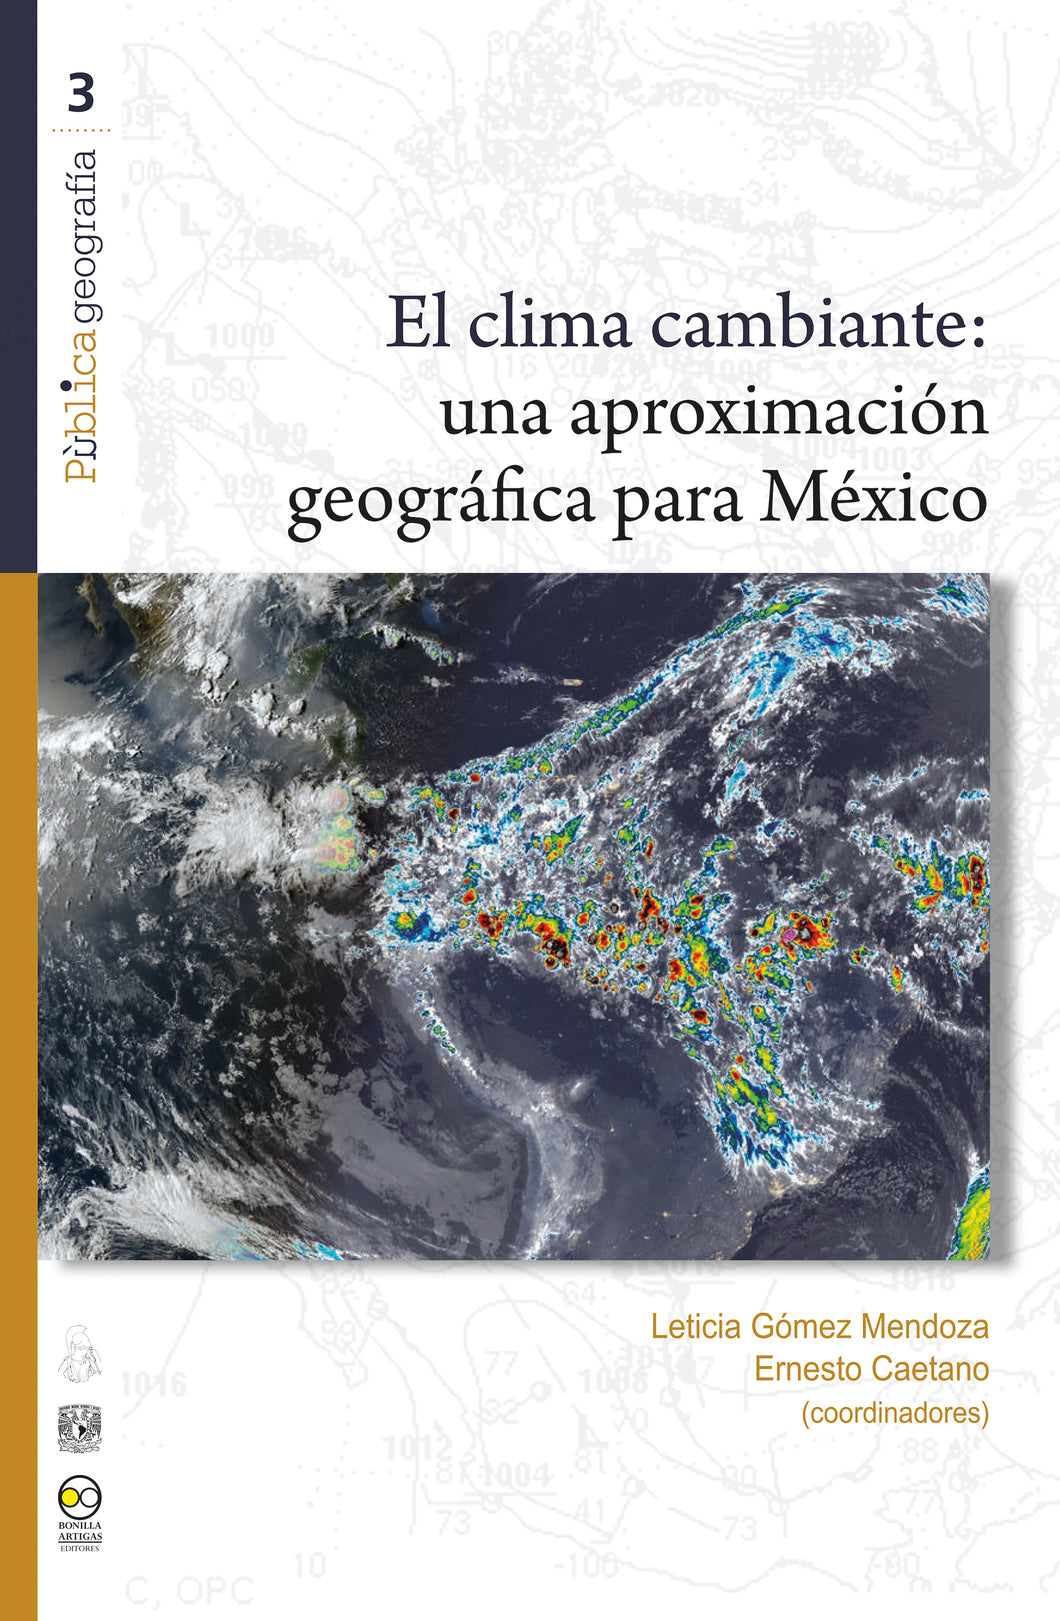 El clima cambiante: una aproximación geográfica para México - Gómez Mendoza, Leticia; Caetano Neto, Ernesto dos Santos